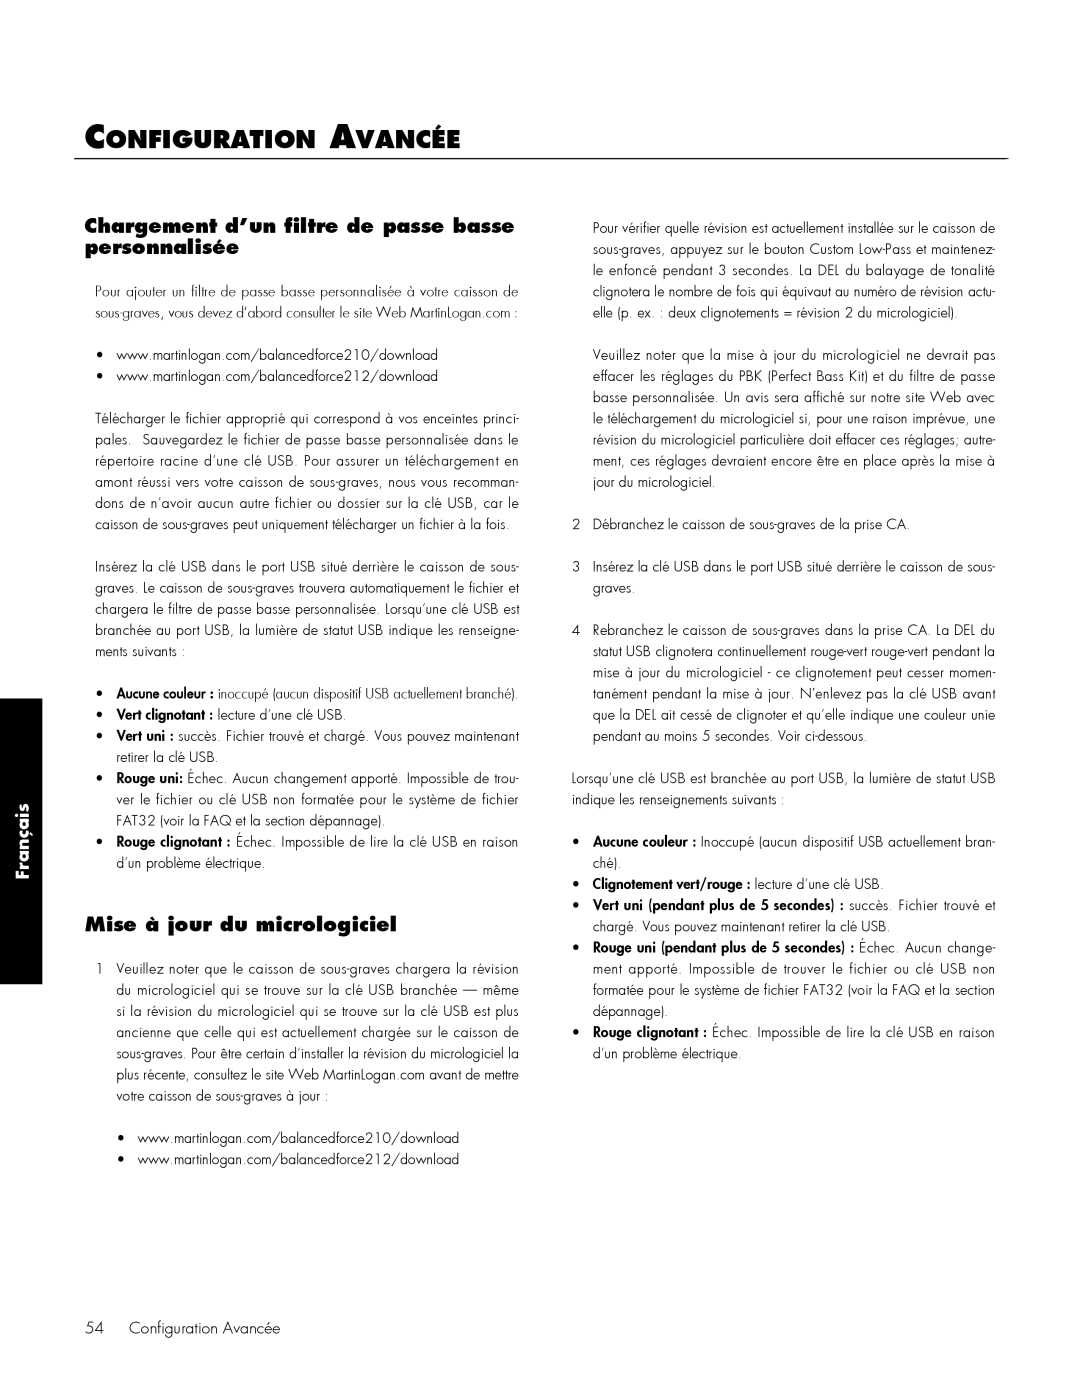 MartinLogan 210, 212 user manual Configuration Avancée, Mise à jour du micrologiciel, Français 